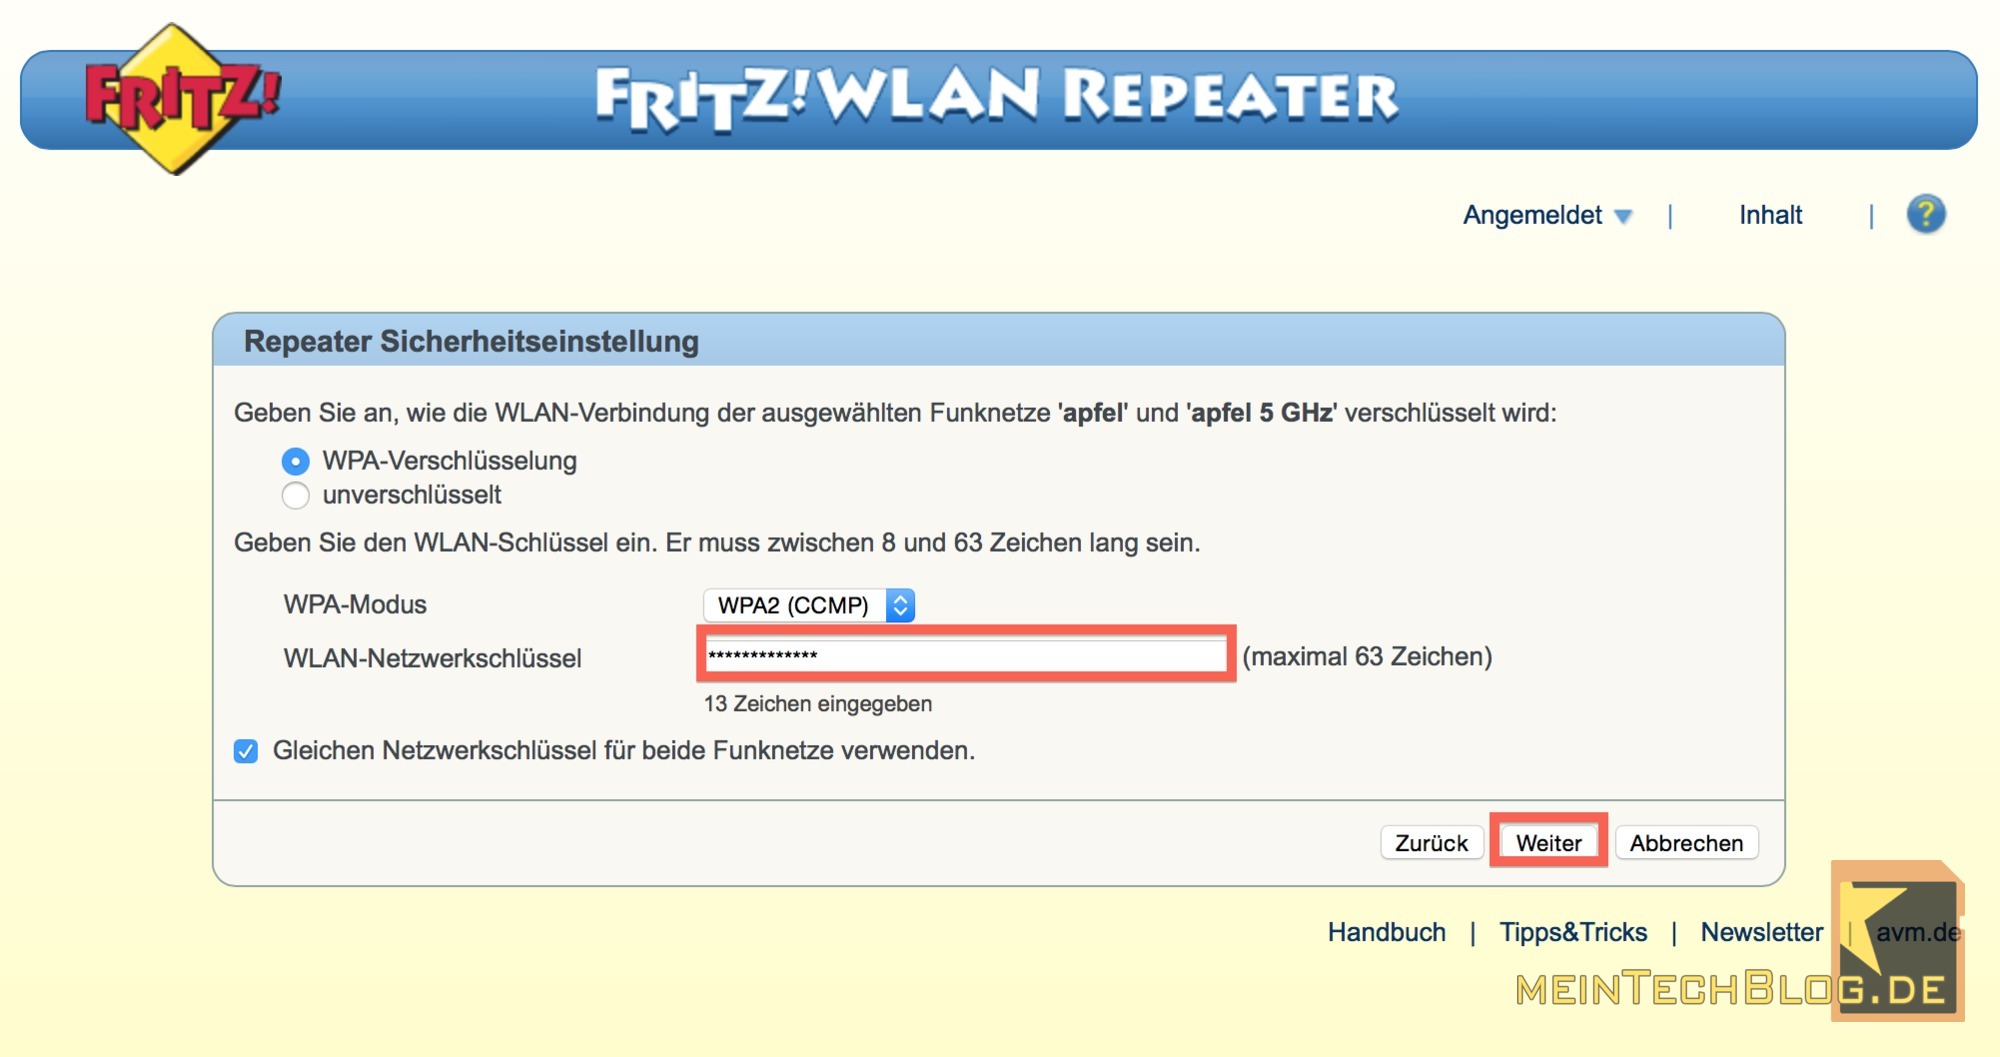 FritzWLAN Repeater Sicherheitseinstellung